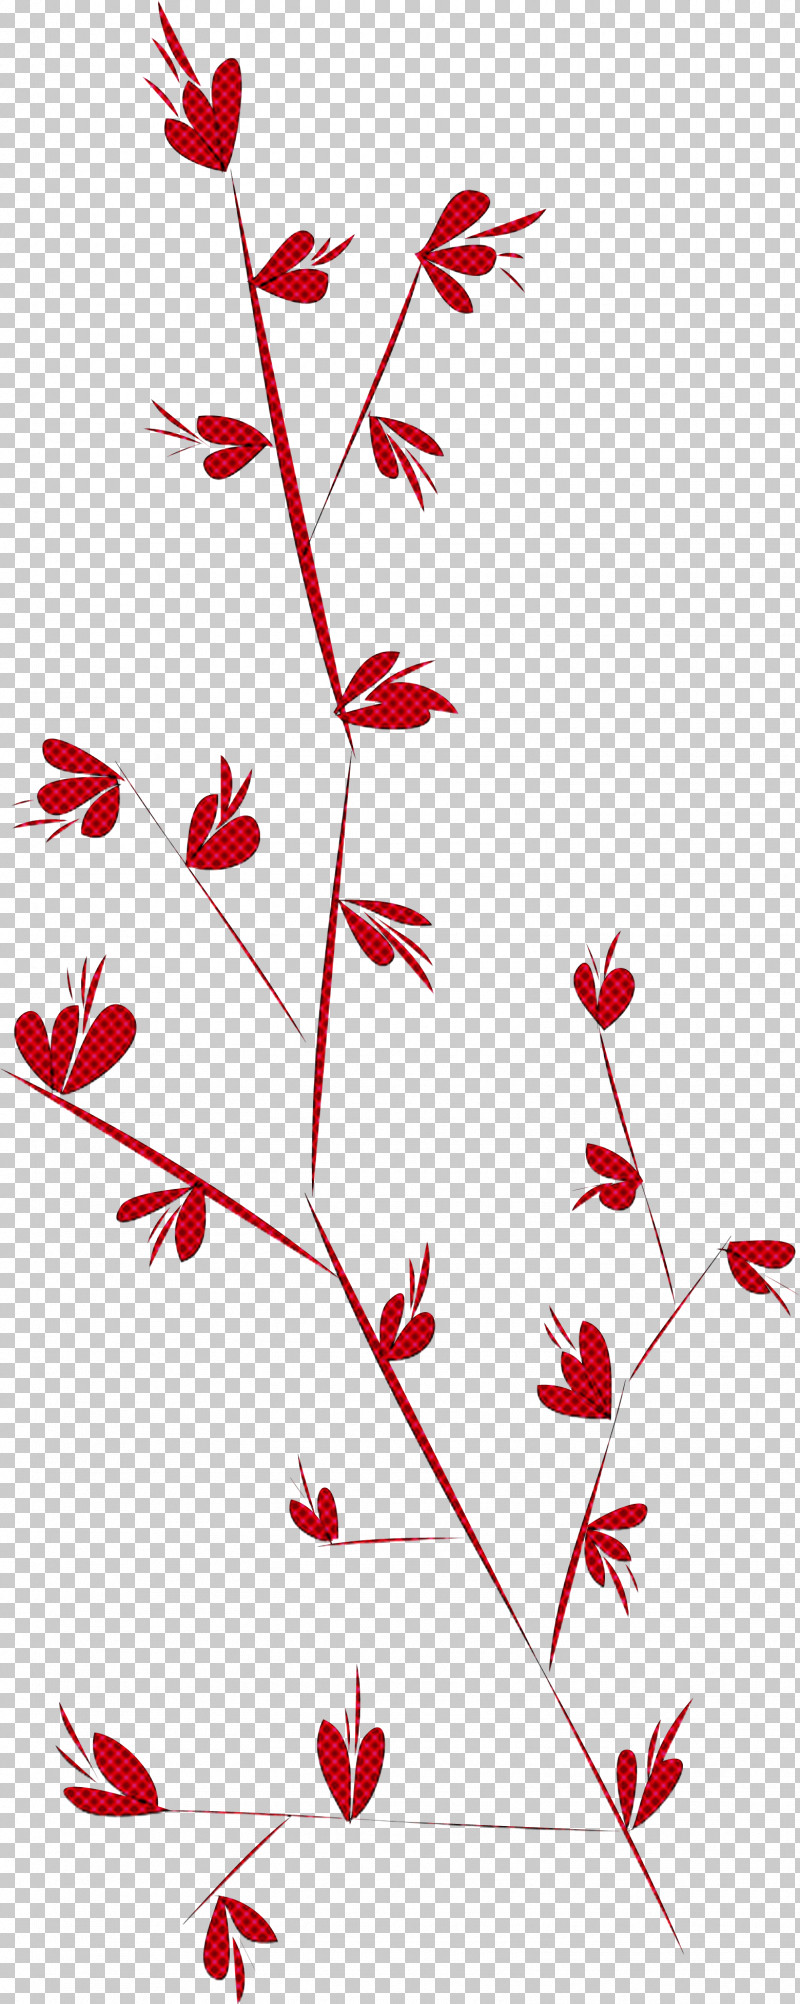 Simple Leaf Simple Leaf Drawing Simple Leaf Outline PNG, Clipart, Cartoon,  Drawing, Floral Design, Leaf, Leaf